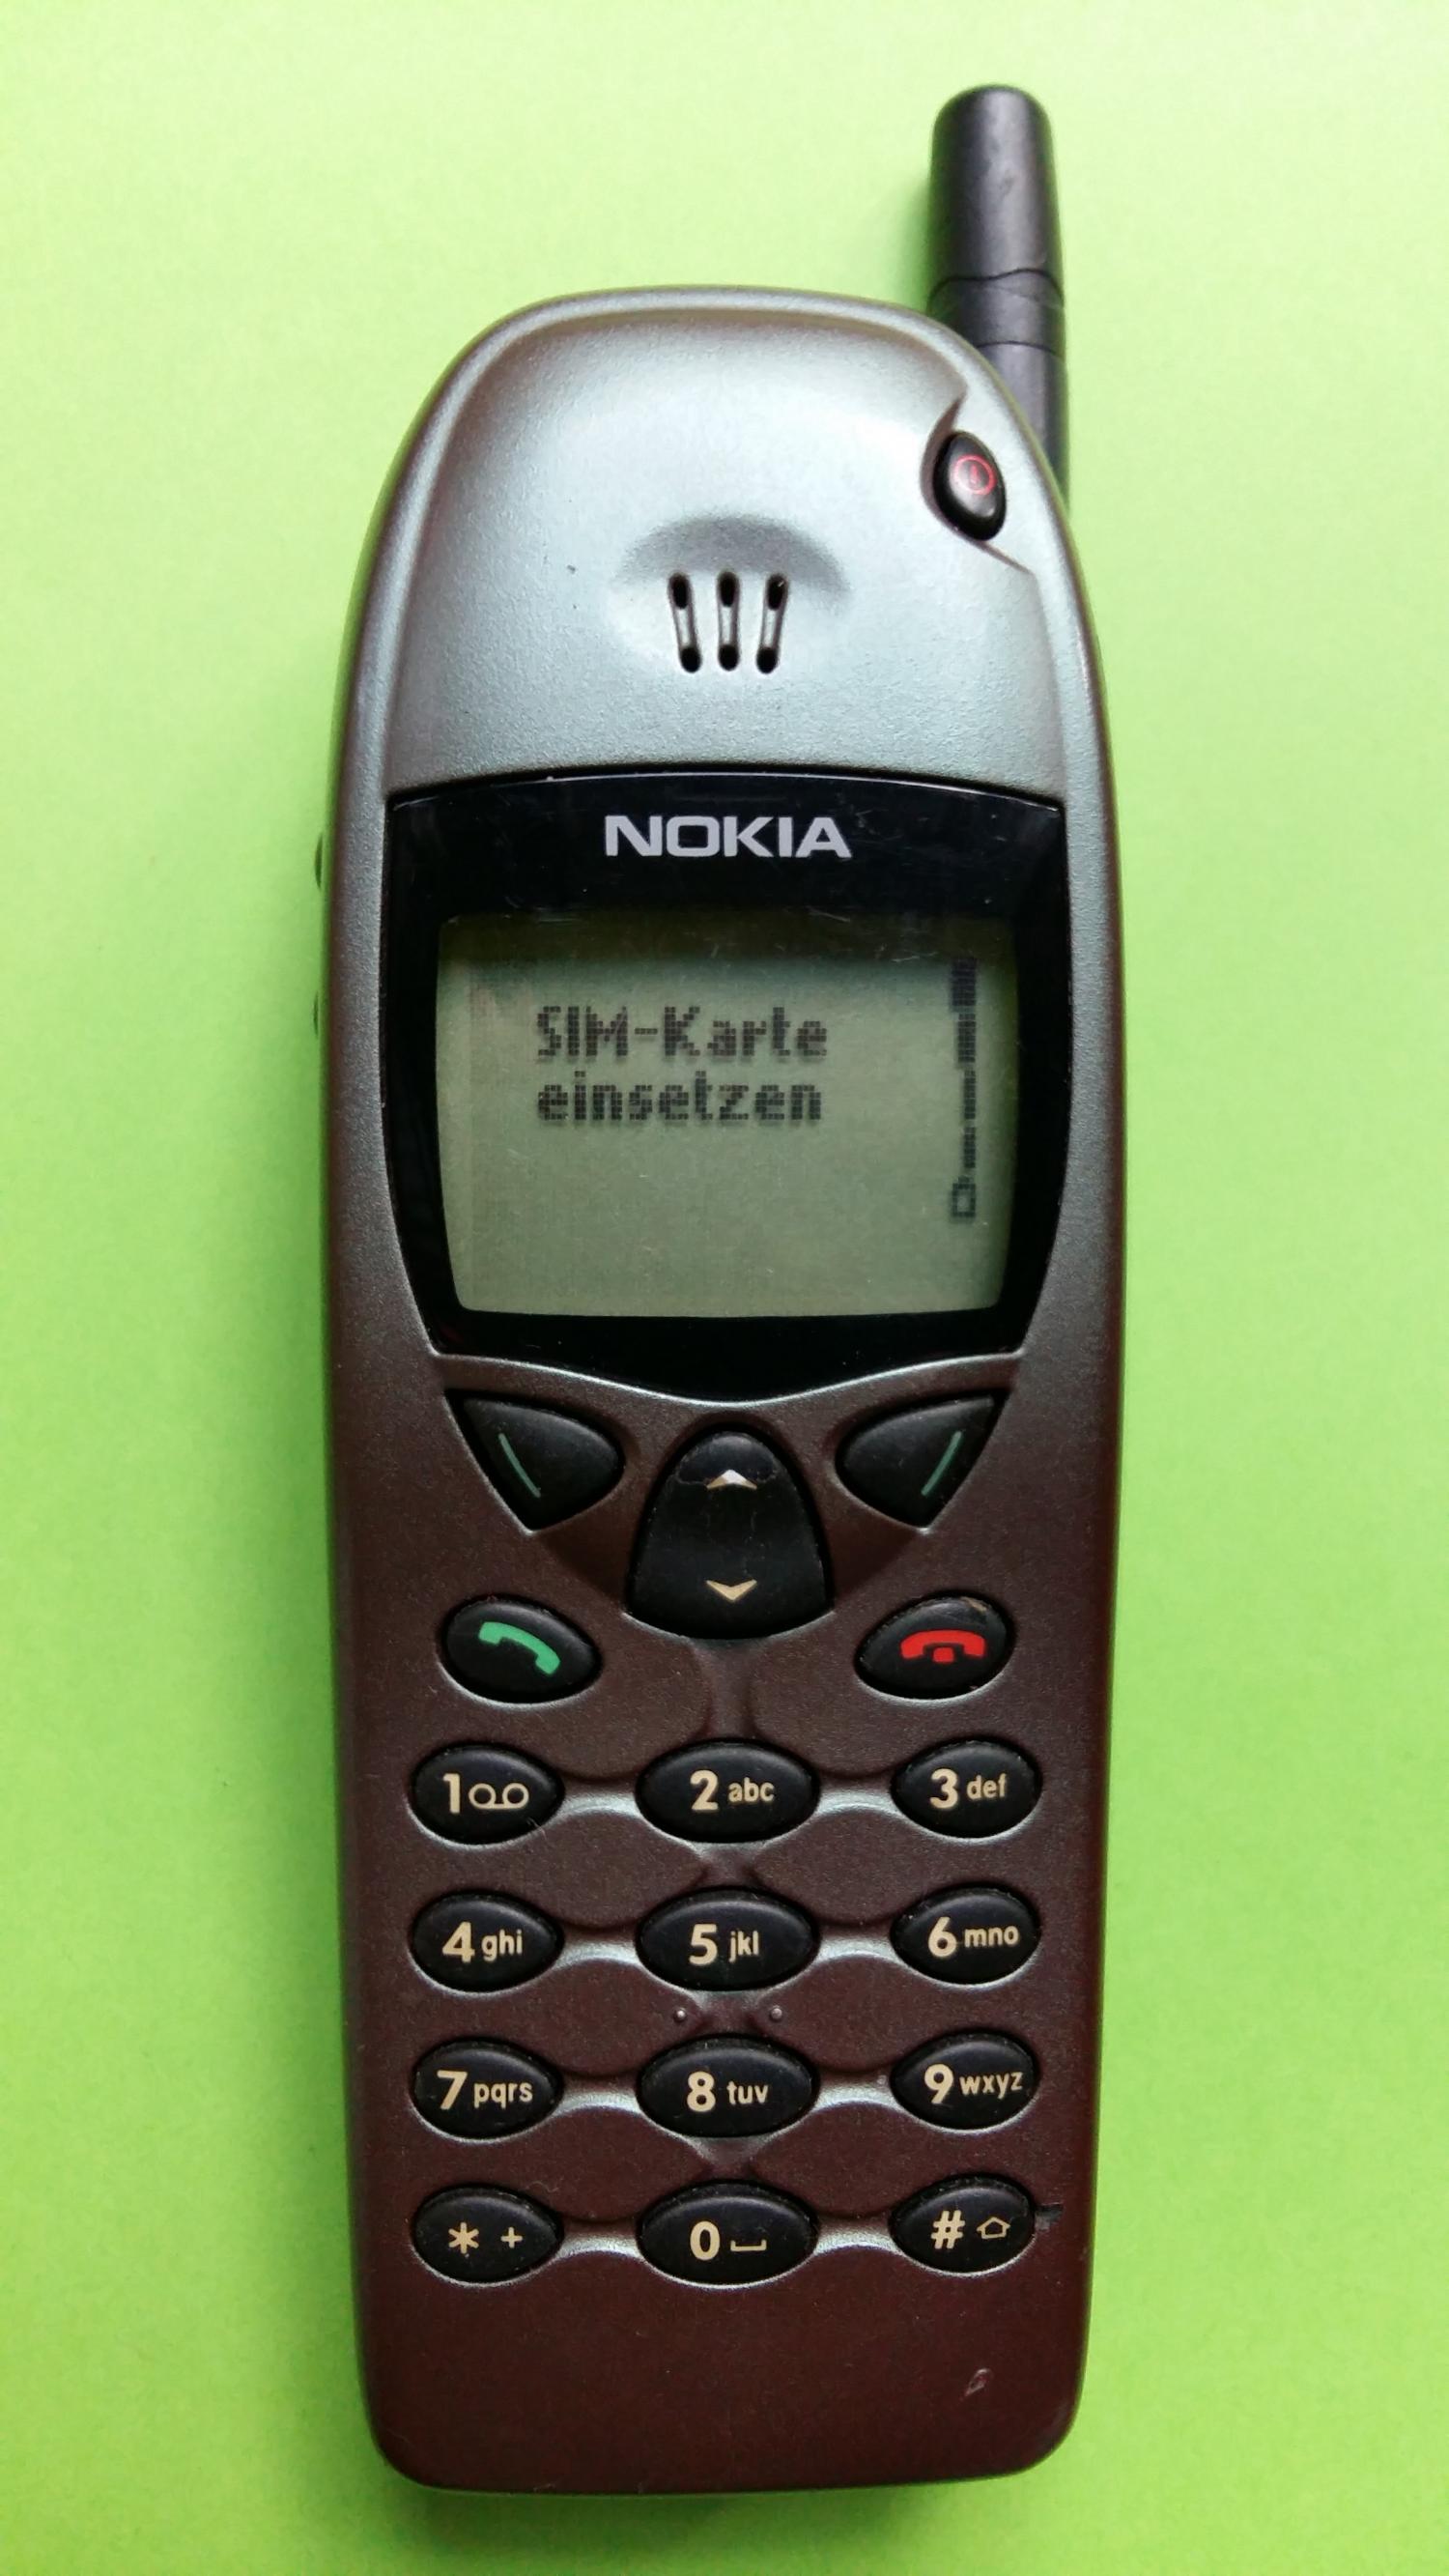 image-7304960-Nokia 6110 (3)1.jpg